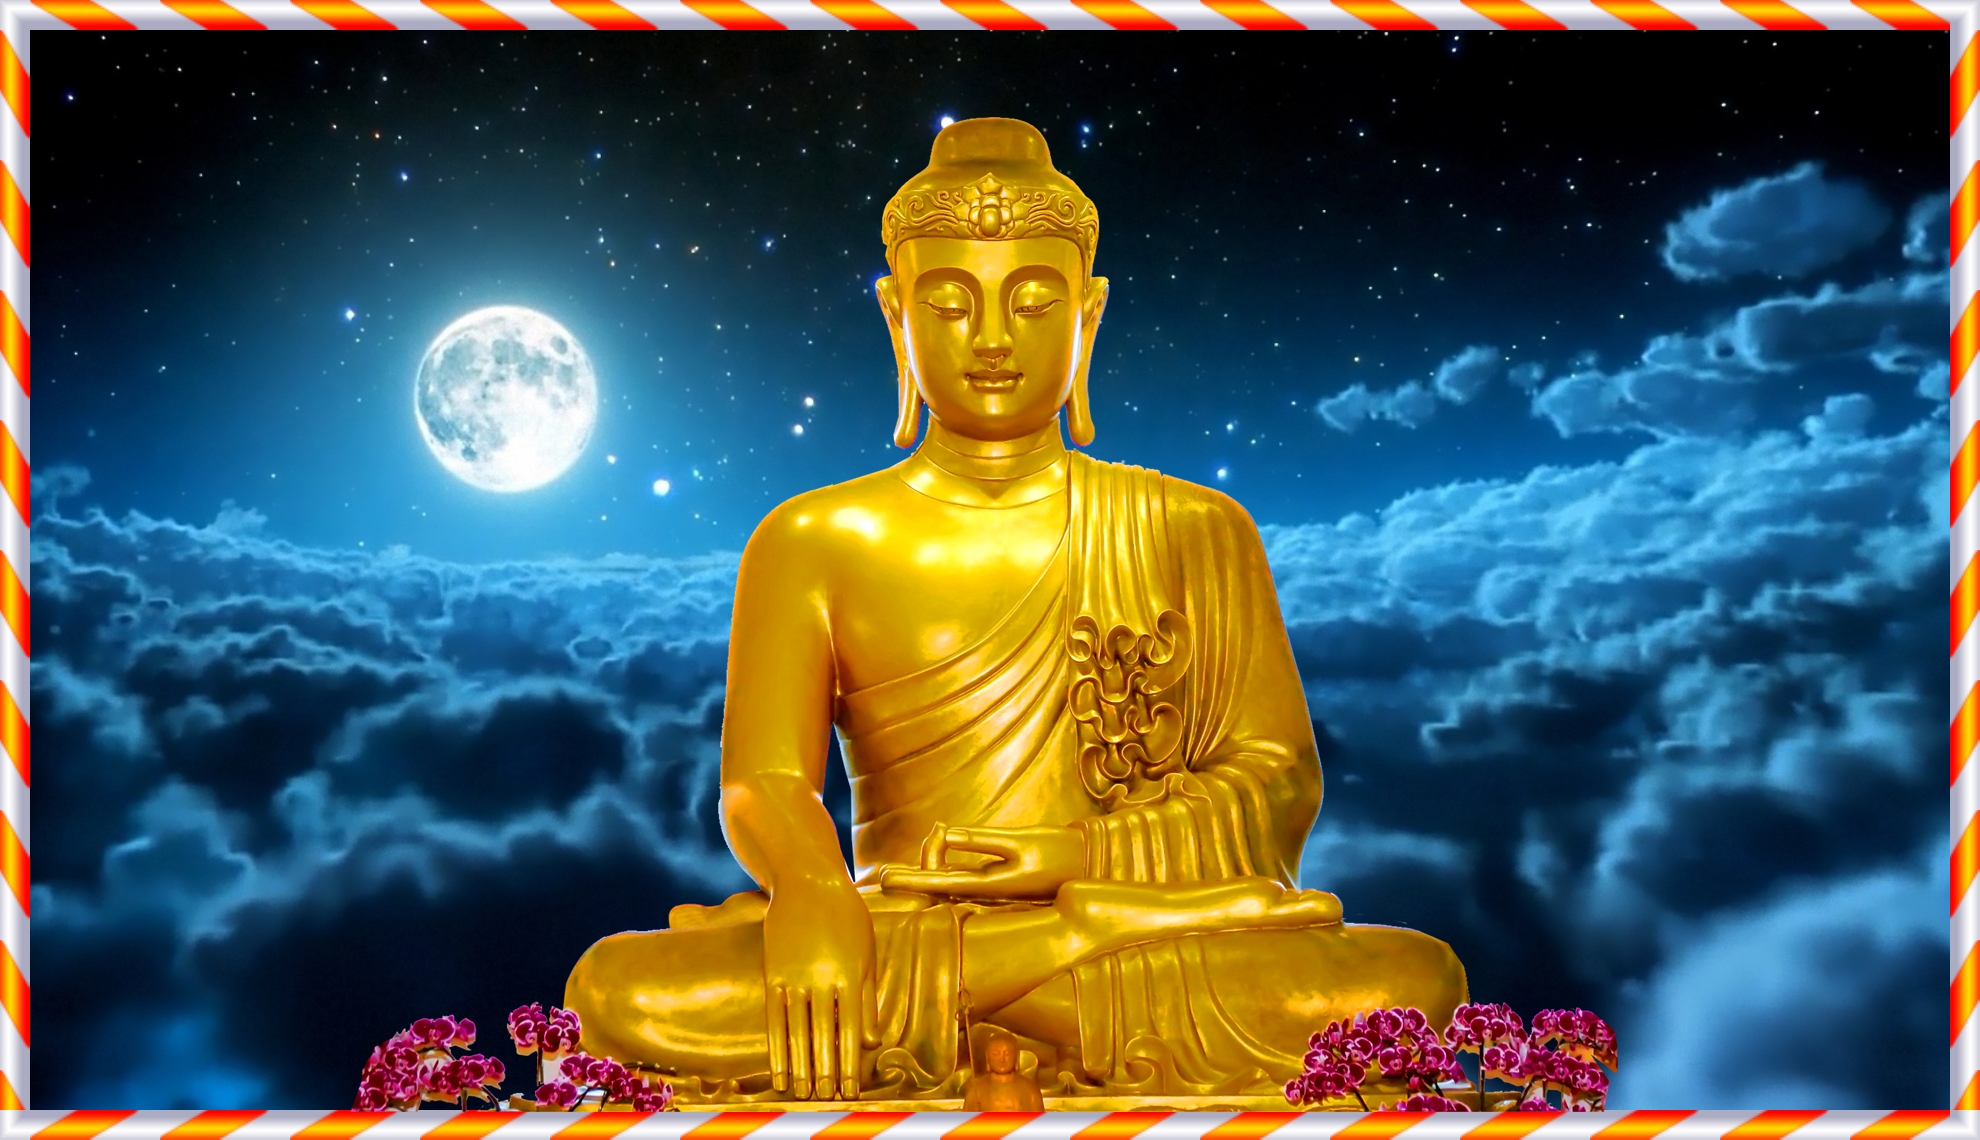 Hình nền phật Thích Ca sẽ khiến bạn cảm thấy an tâm và thanh thản. Nét đẹp trang nhã của đức Phật rất phù hợp để đặt làm hình nền cho điện thoại hay máy tính của bạn.